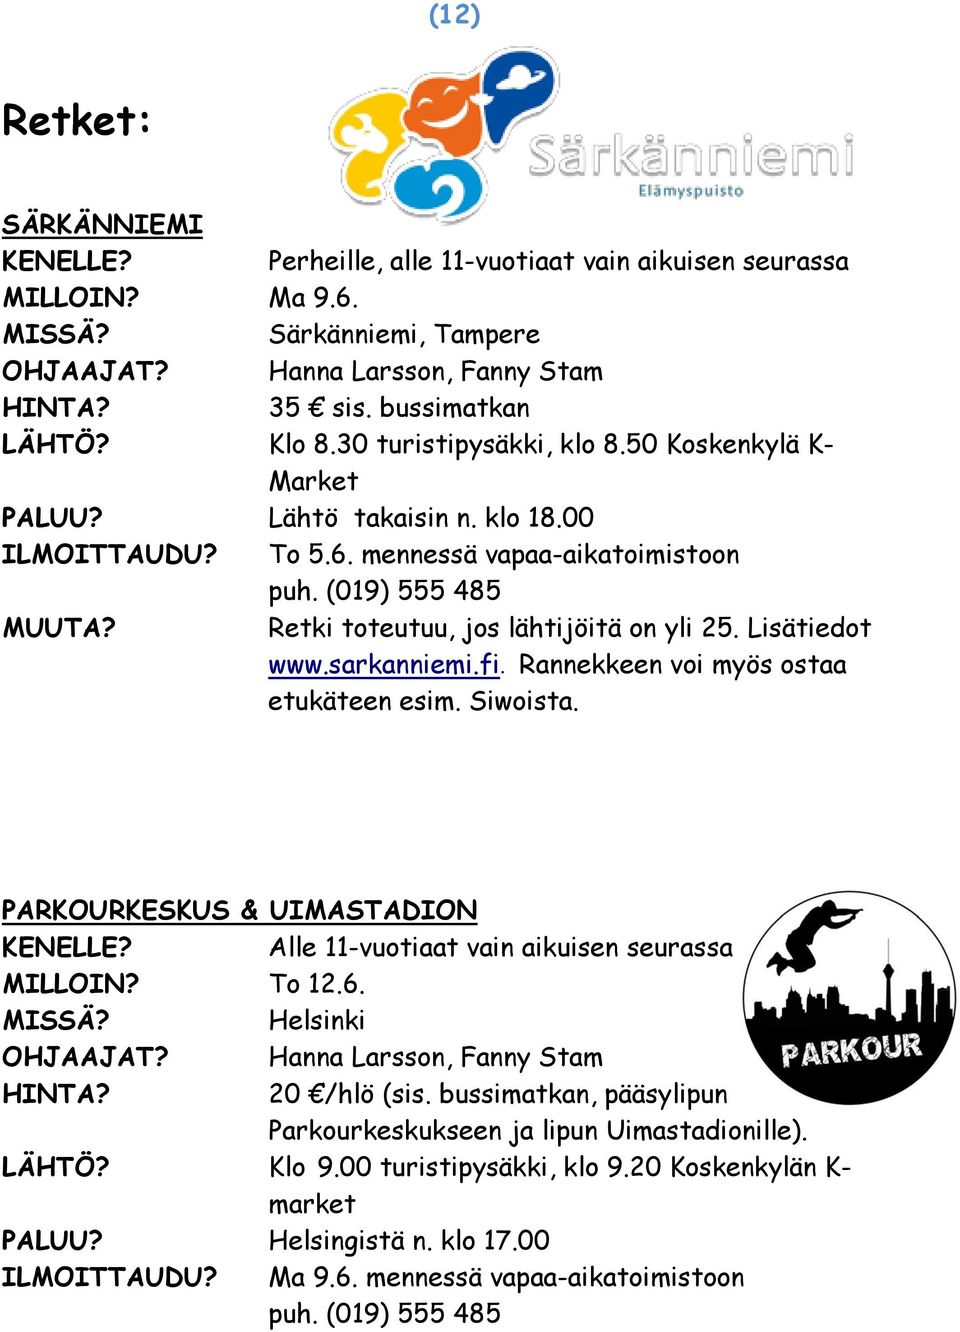 Lisätiedot www.sarkanniemi.fi. Rannekkeen voi myös ostaa etukäteen esim. Siwoista. PARKOURKESKUS & UIMASTADION Alle 11-vuotiaat vain aikuisen seurassa MILLOIN? To 12.6. Helsinki OHJAAJAT?